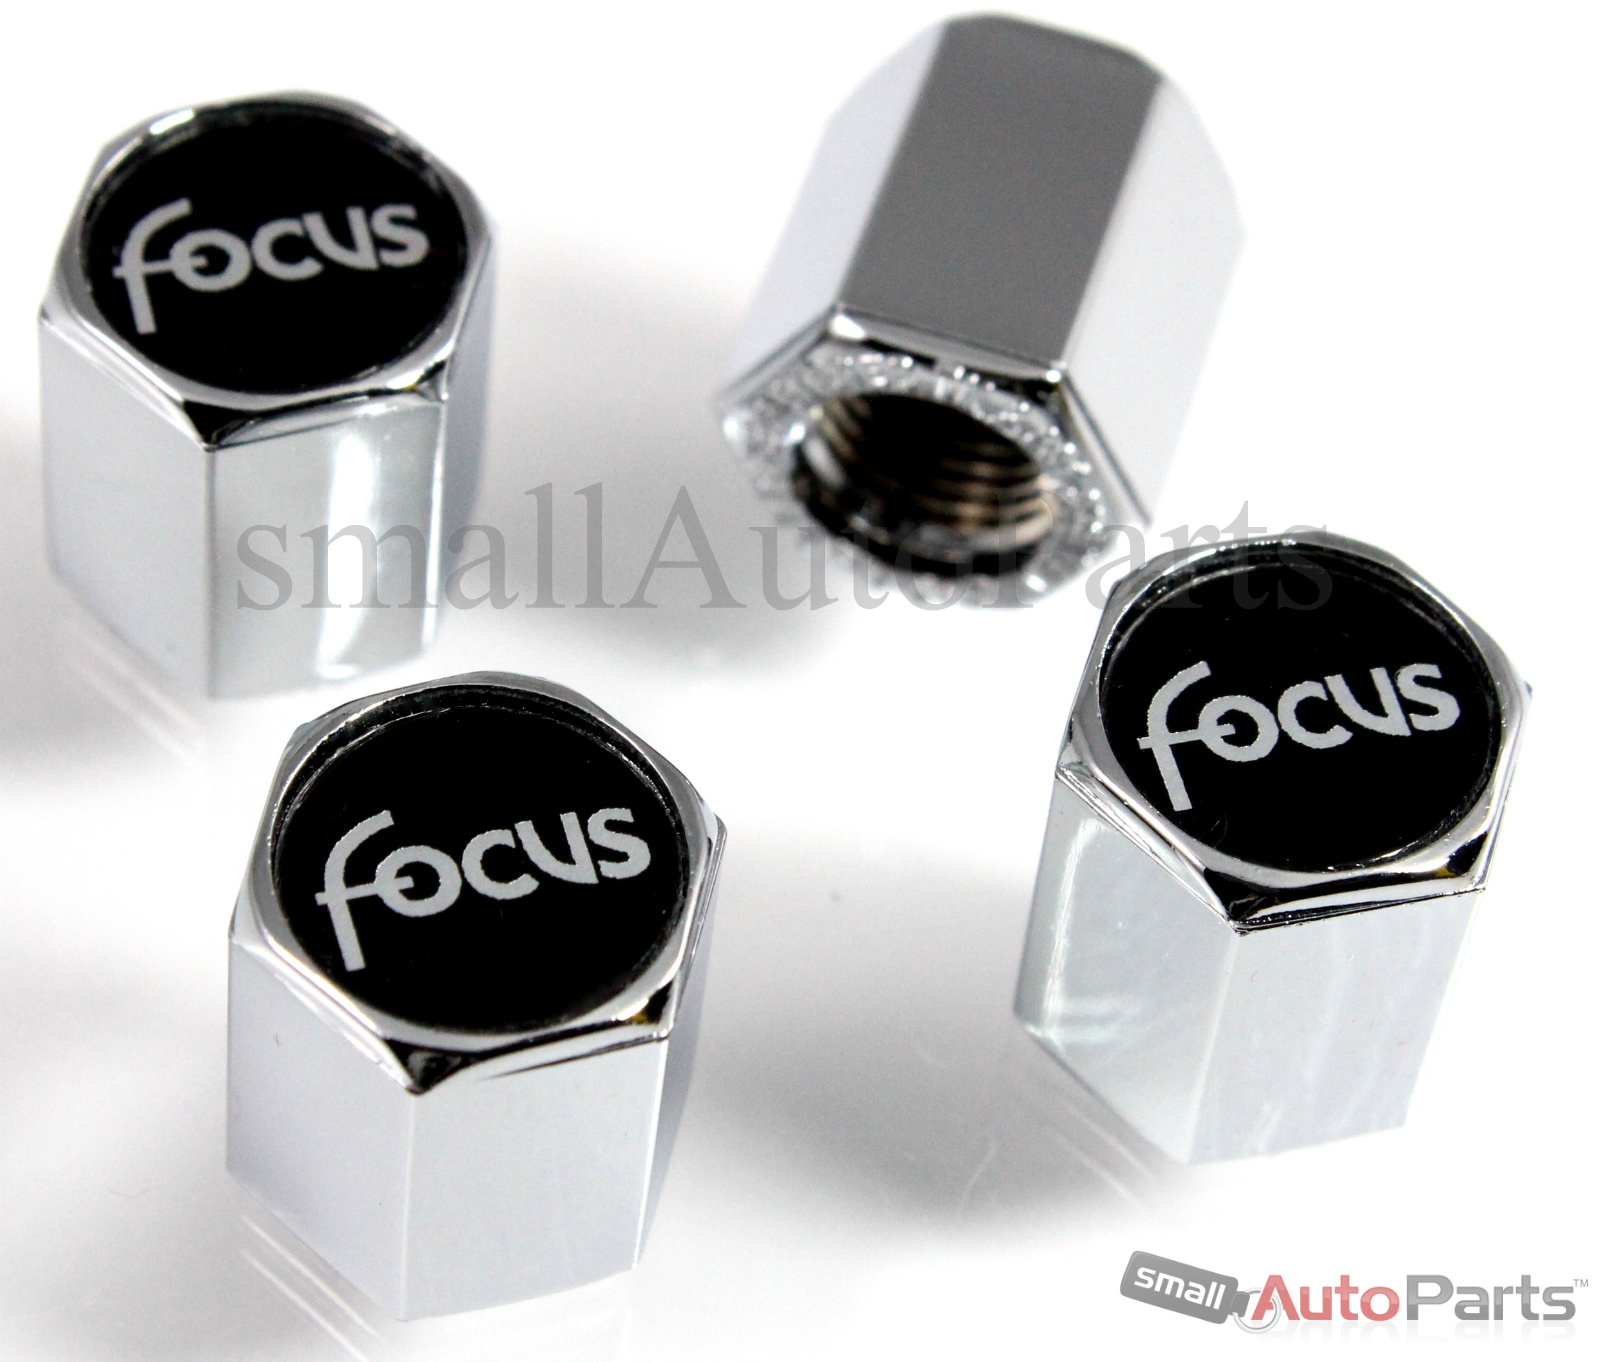 Ford focus valve stem caps #8